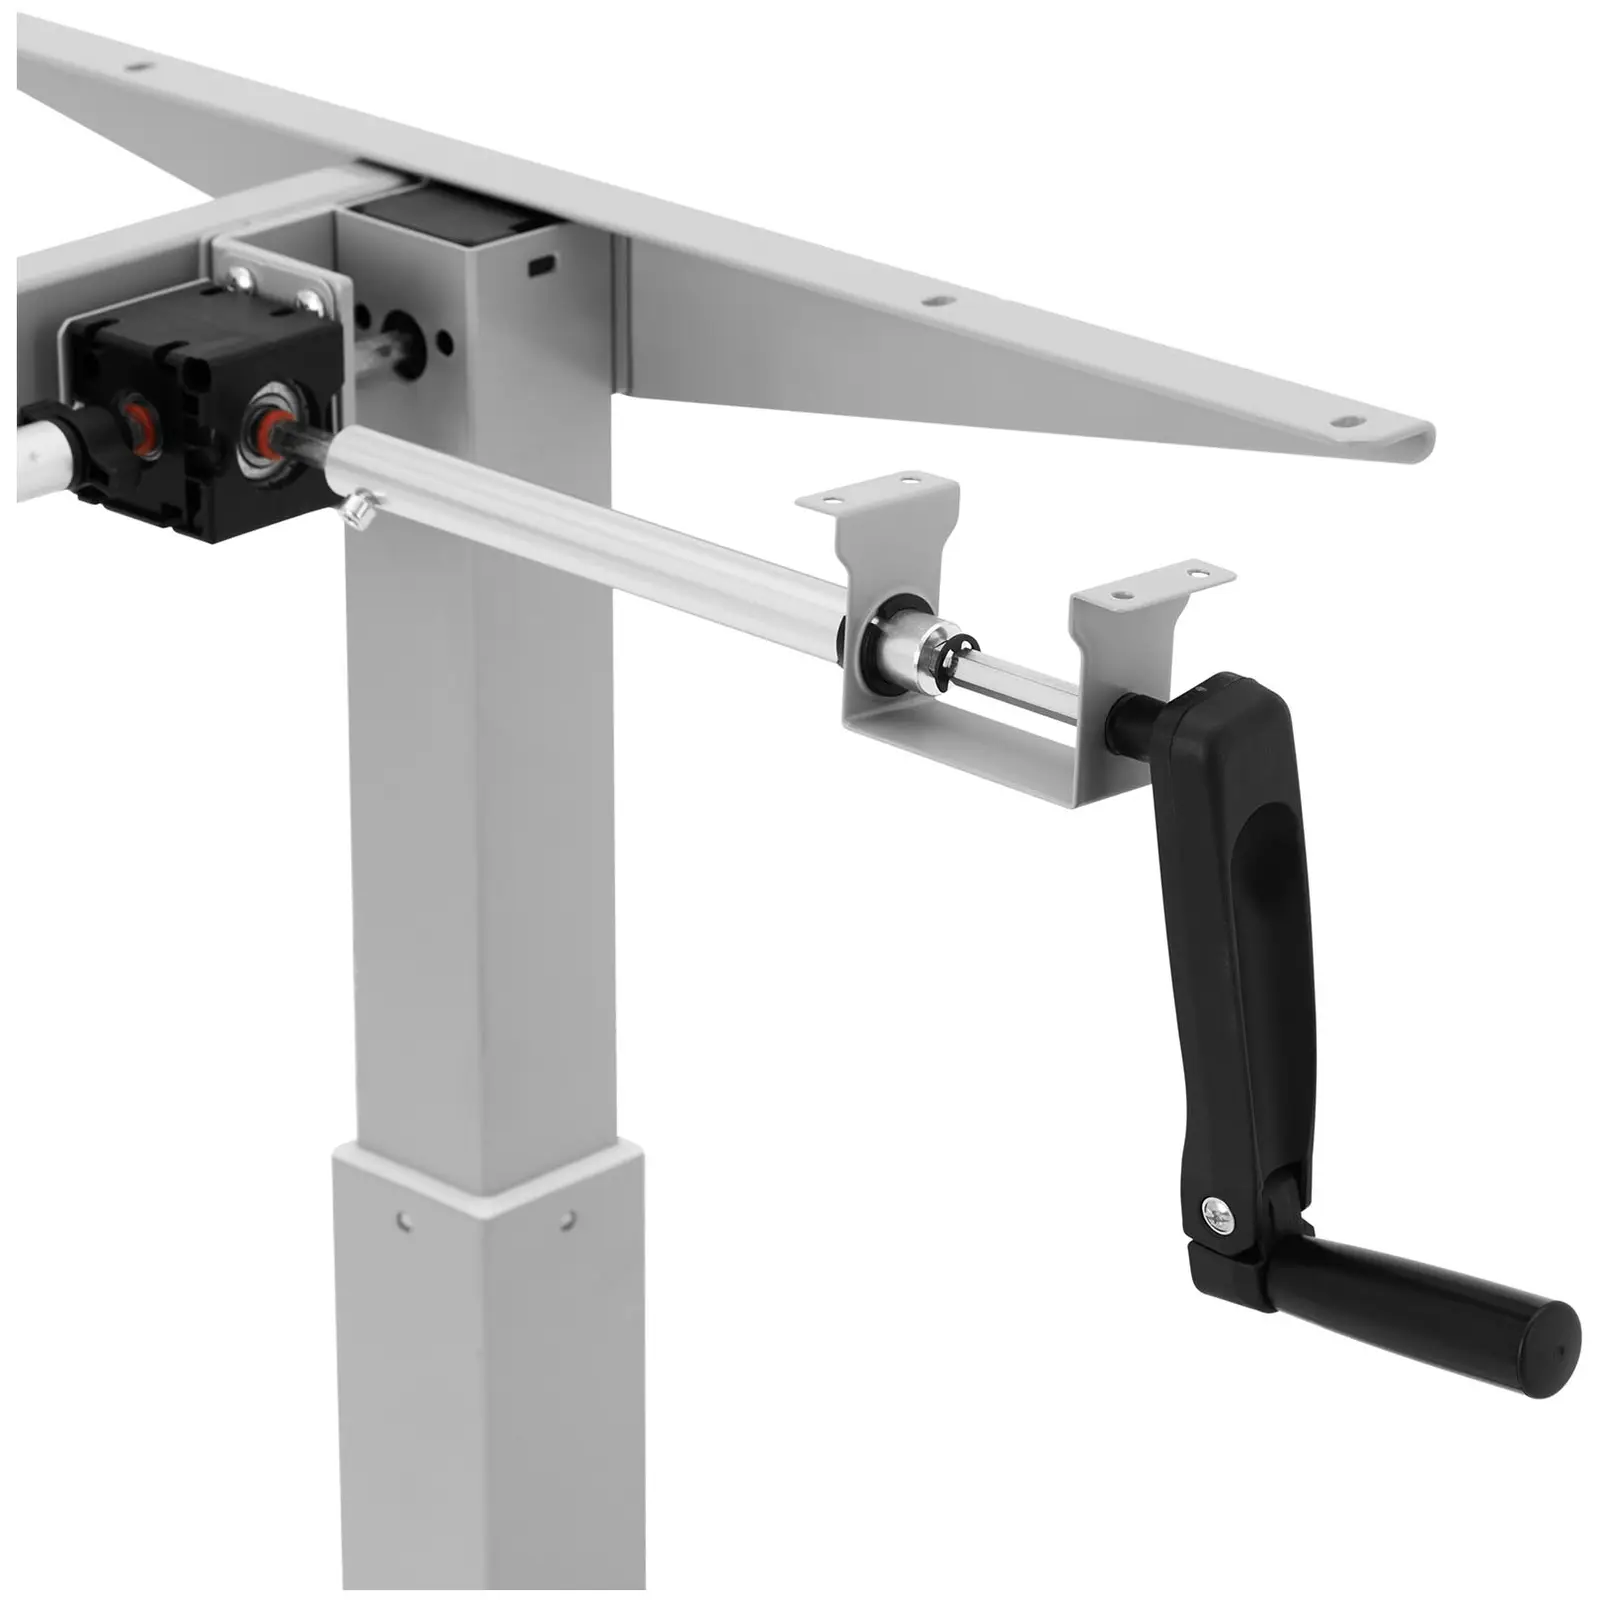 Supporto scrivania regolabile in altezza - Manuale - 70 kg - Grigio